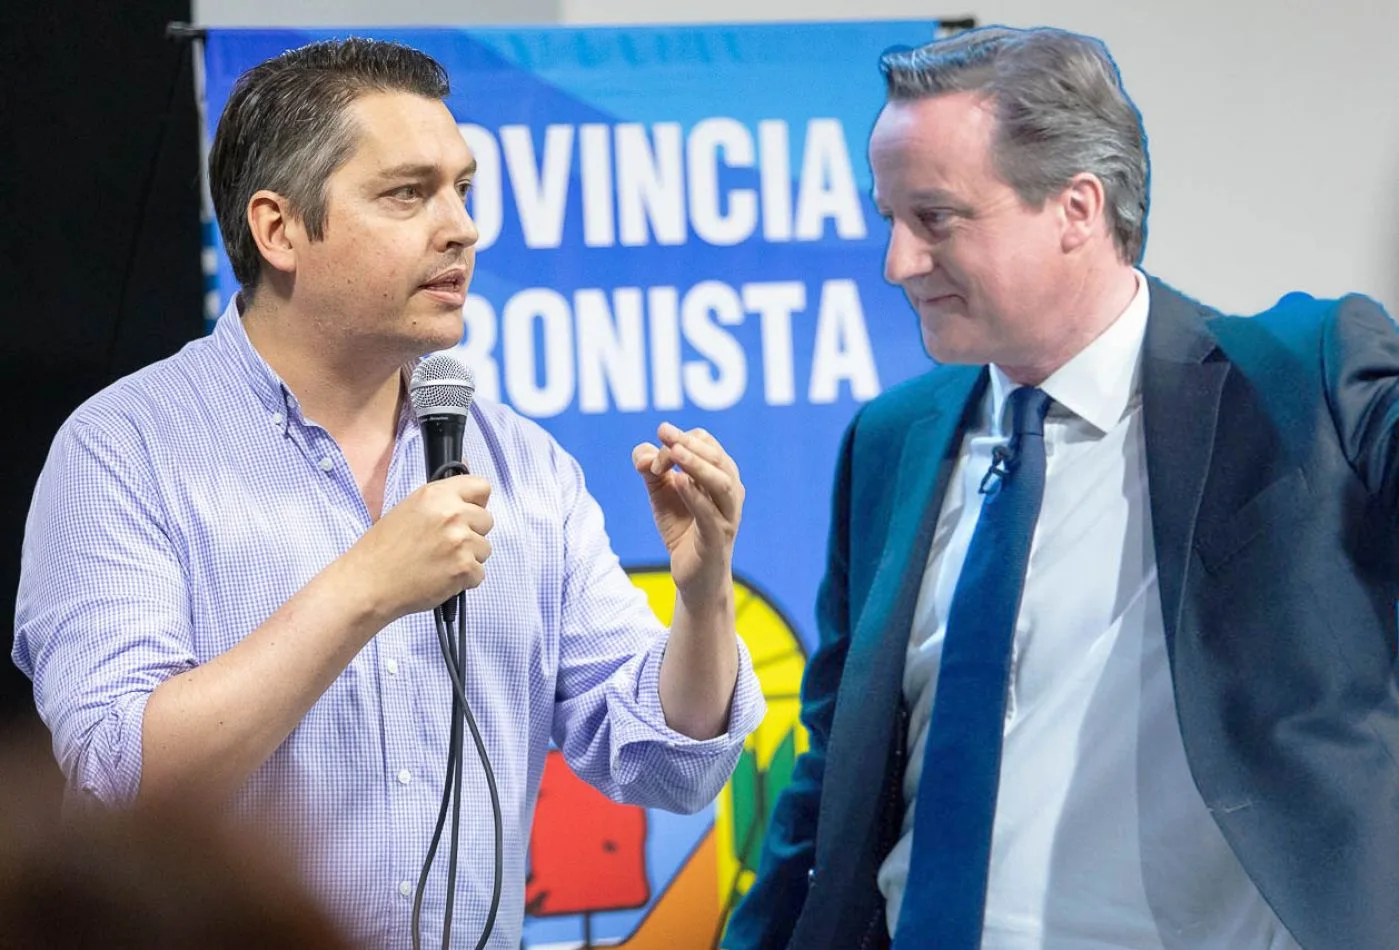 Martín Pérez calificó de “Provocación” la visita de Cameron a Malvinas